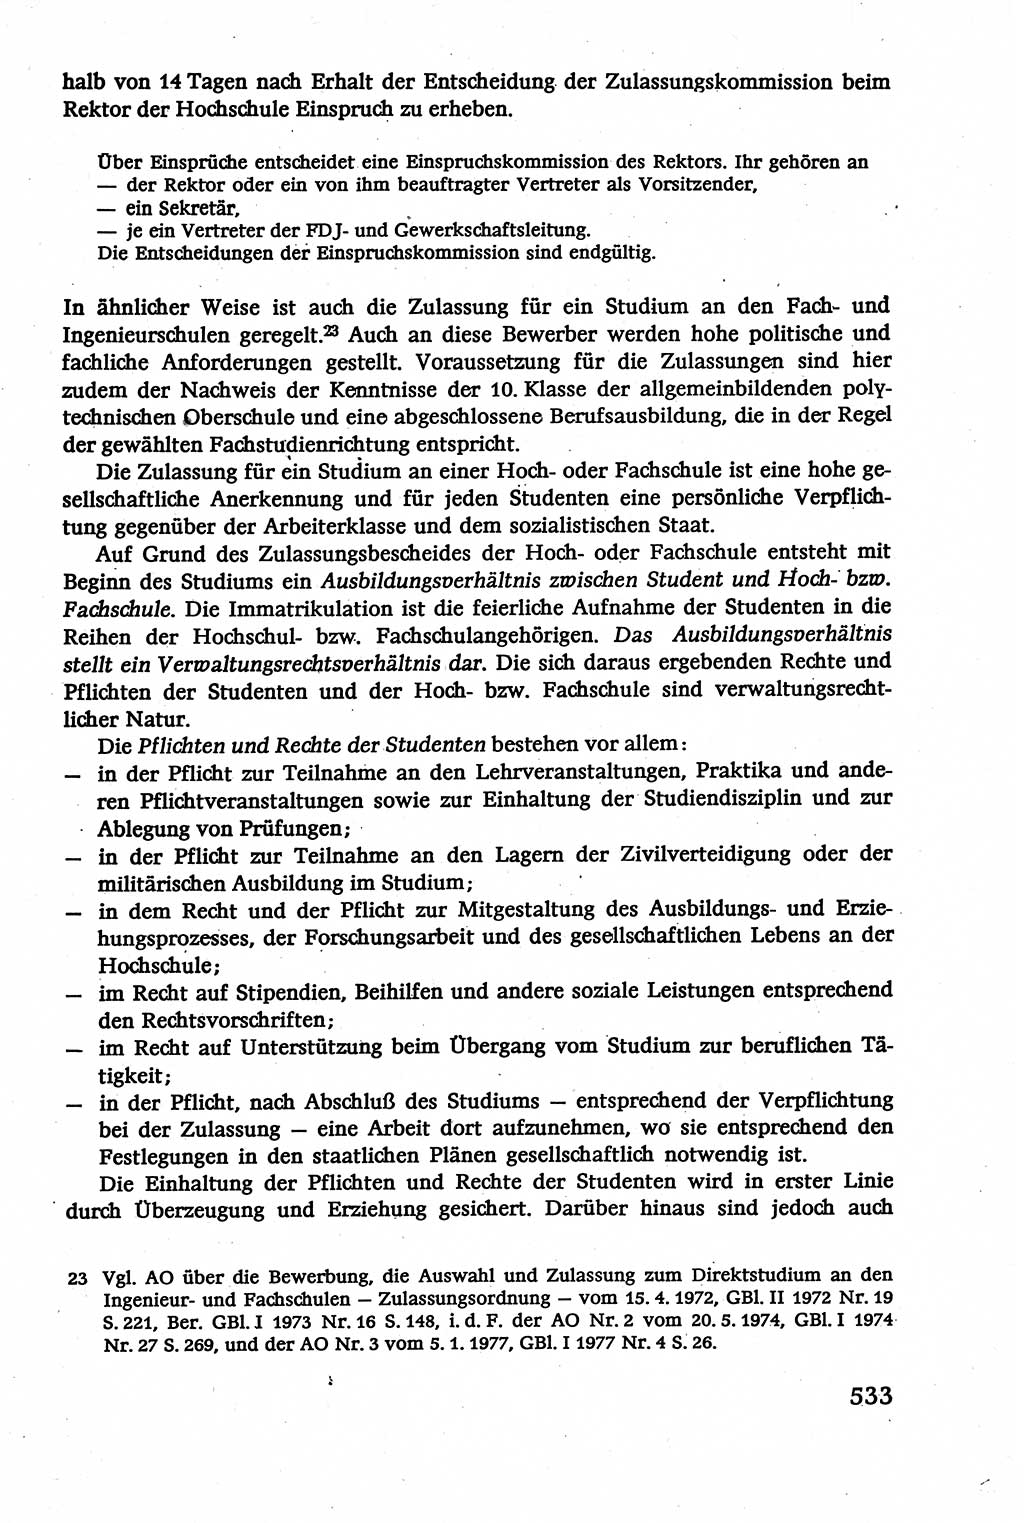 Verwaltungsrecht [Deutsche Demokratische Republik (DDR)], Lehrbuch 1979, Seite 533 (Verw.-R. DDR Lb. 1979, S. 533)